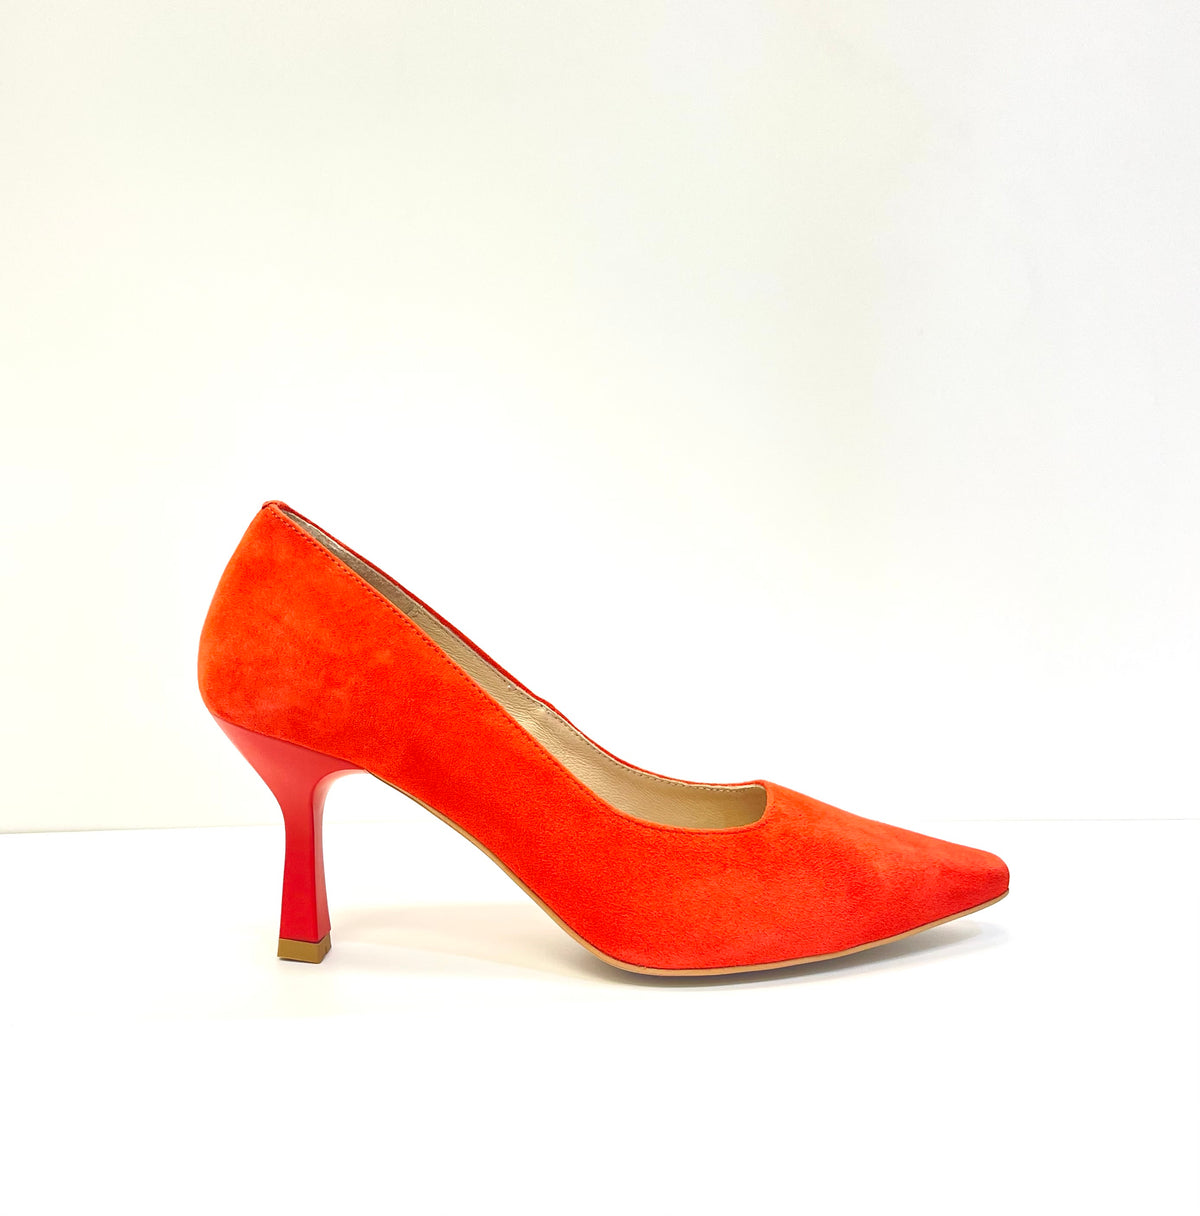 Rachels - Orange Suede Court Shoe